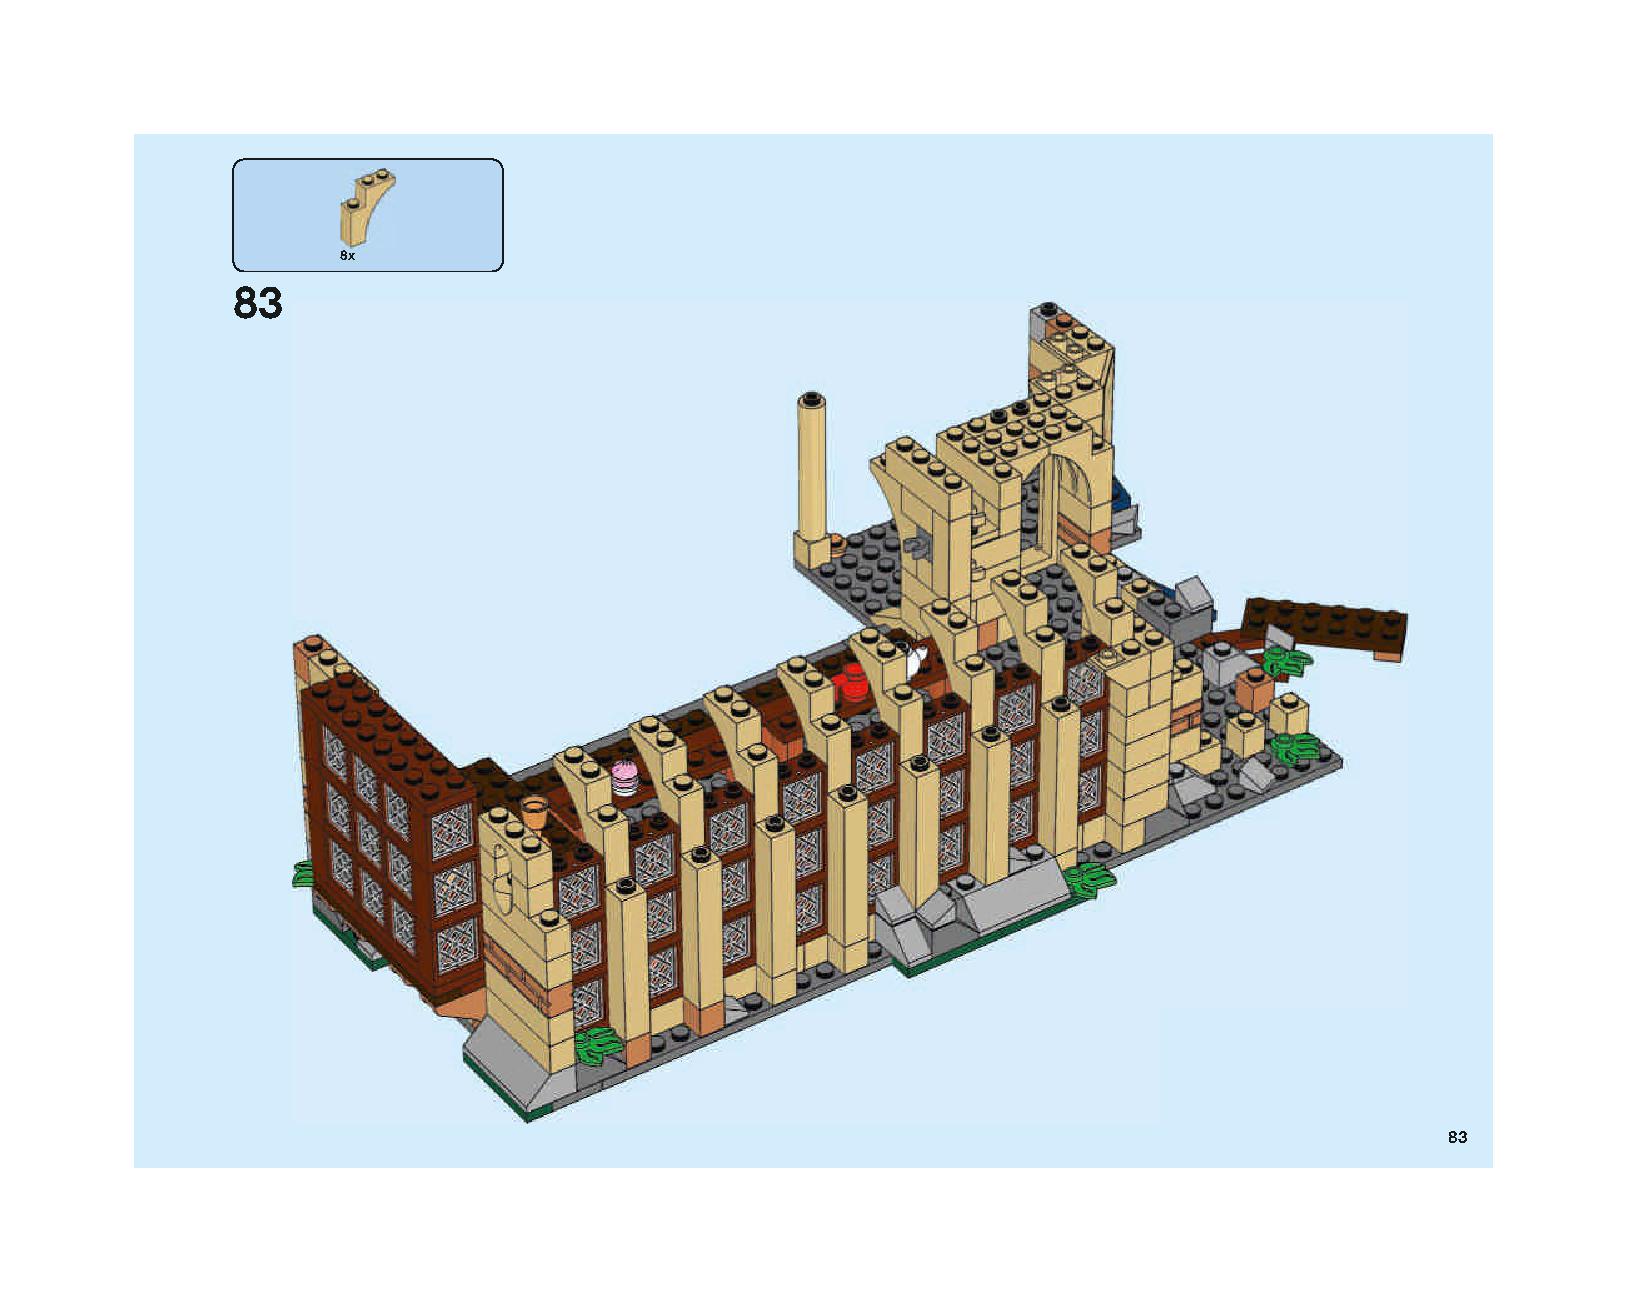 ホグワーツの大広間 75954 レゴの商品情報 レゴの説明書・組立方法 83 page